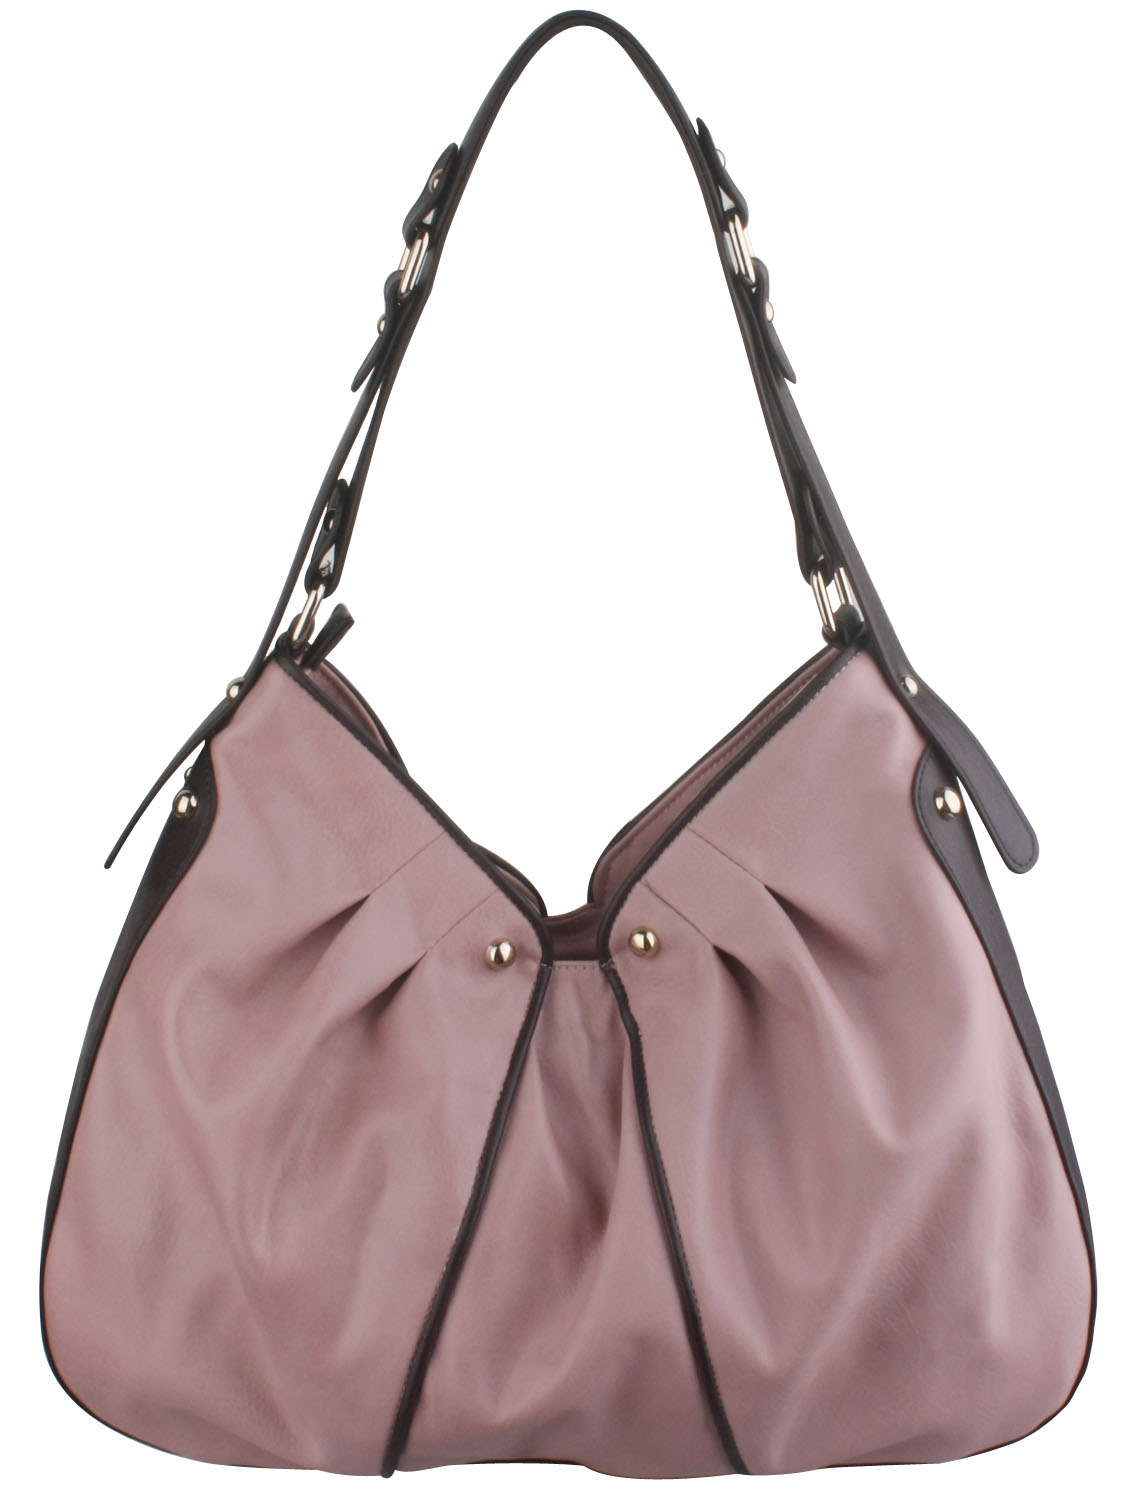 Fashion Ladies' Handbag (QL005-03)